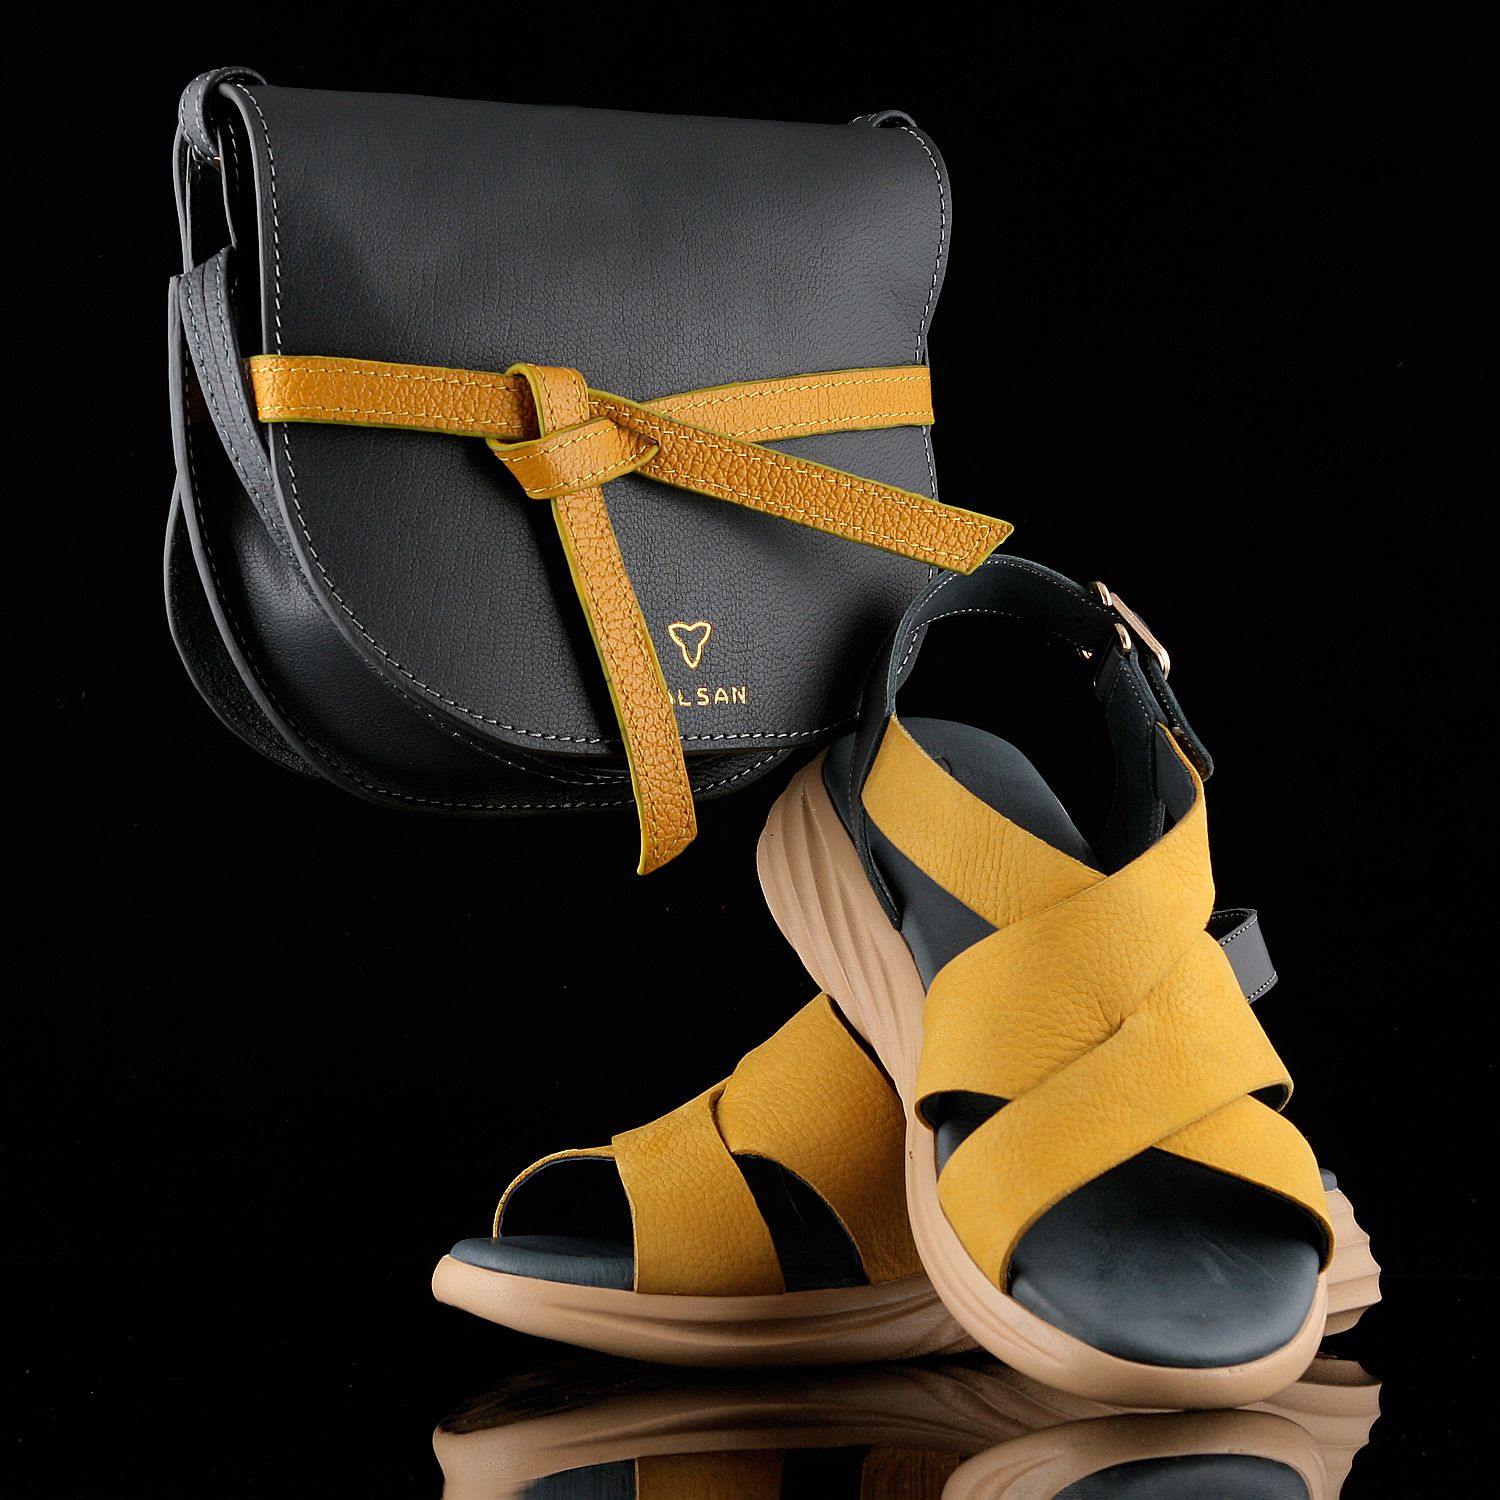 ست کیف و کفش زنانه چرم یلسان مدل برکه کد RICHMOND-GF-903-tos -  - 6